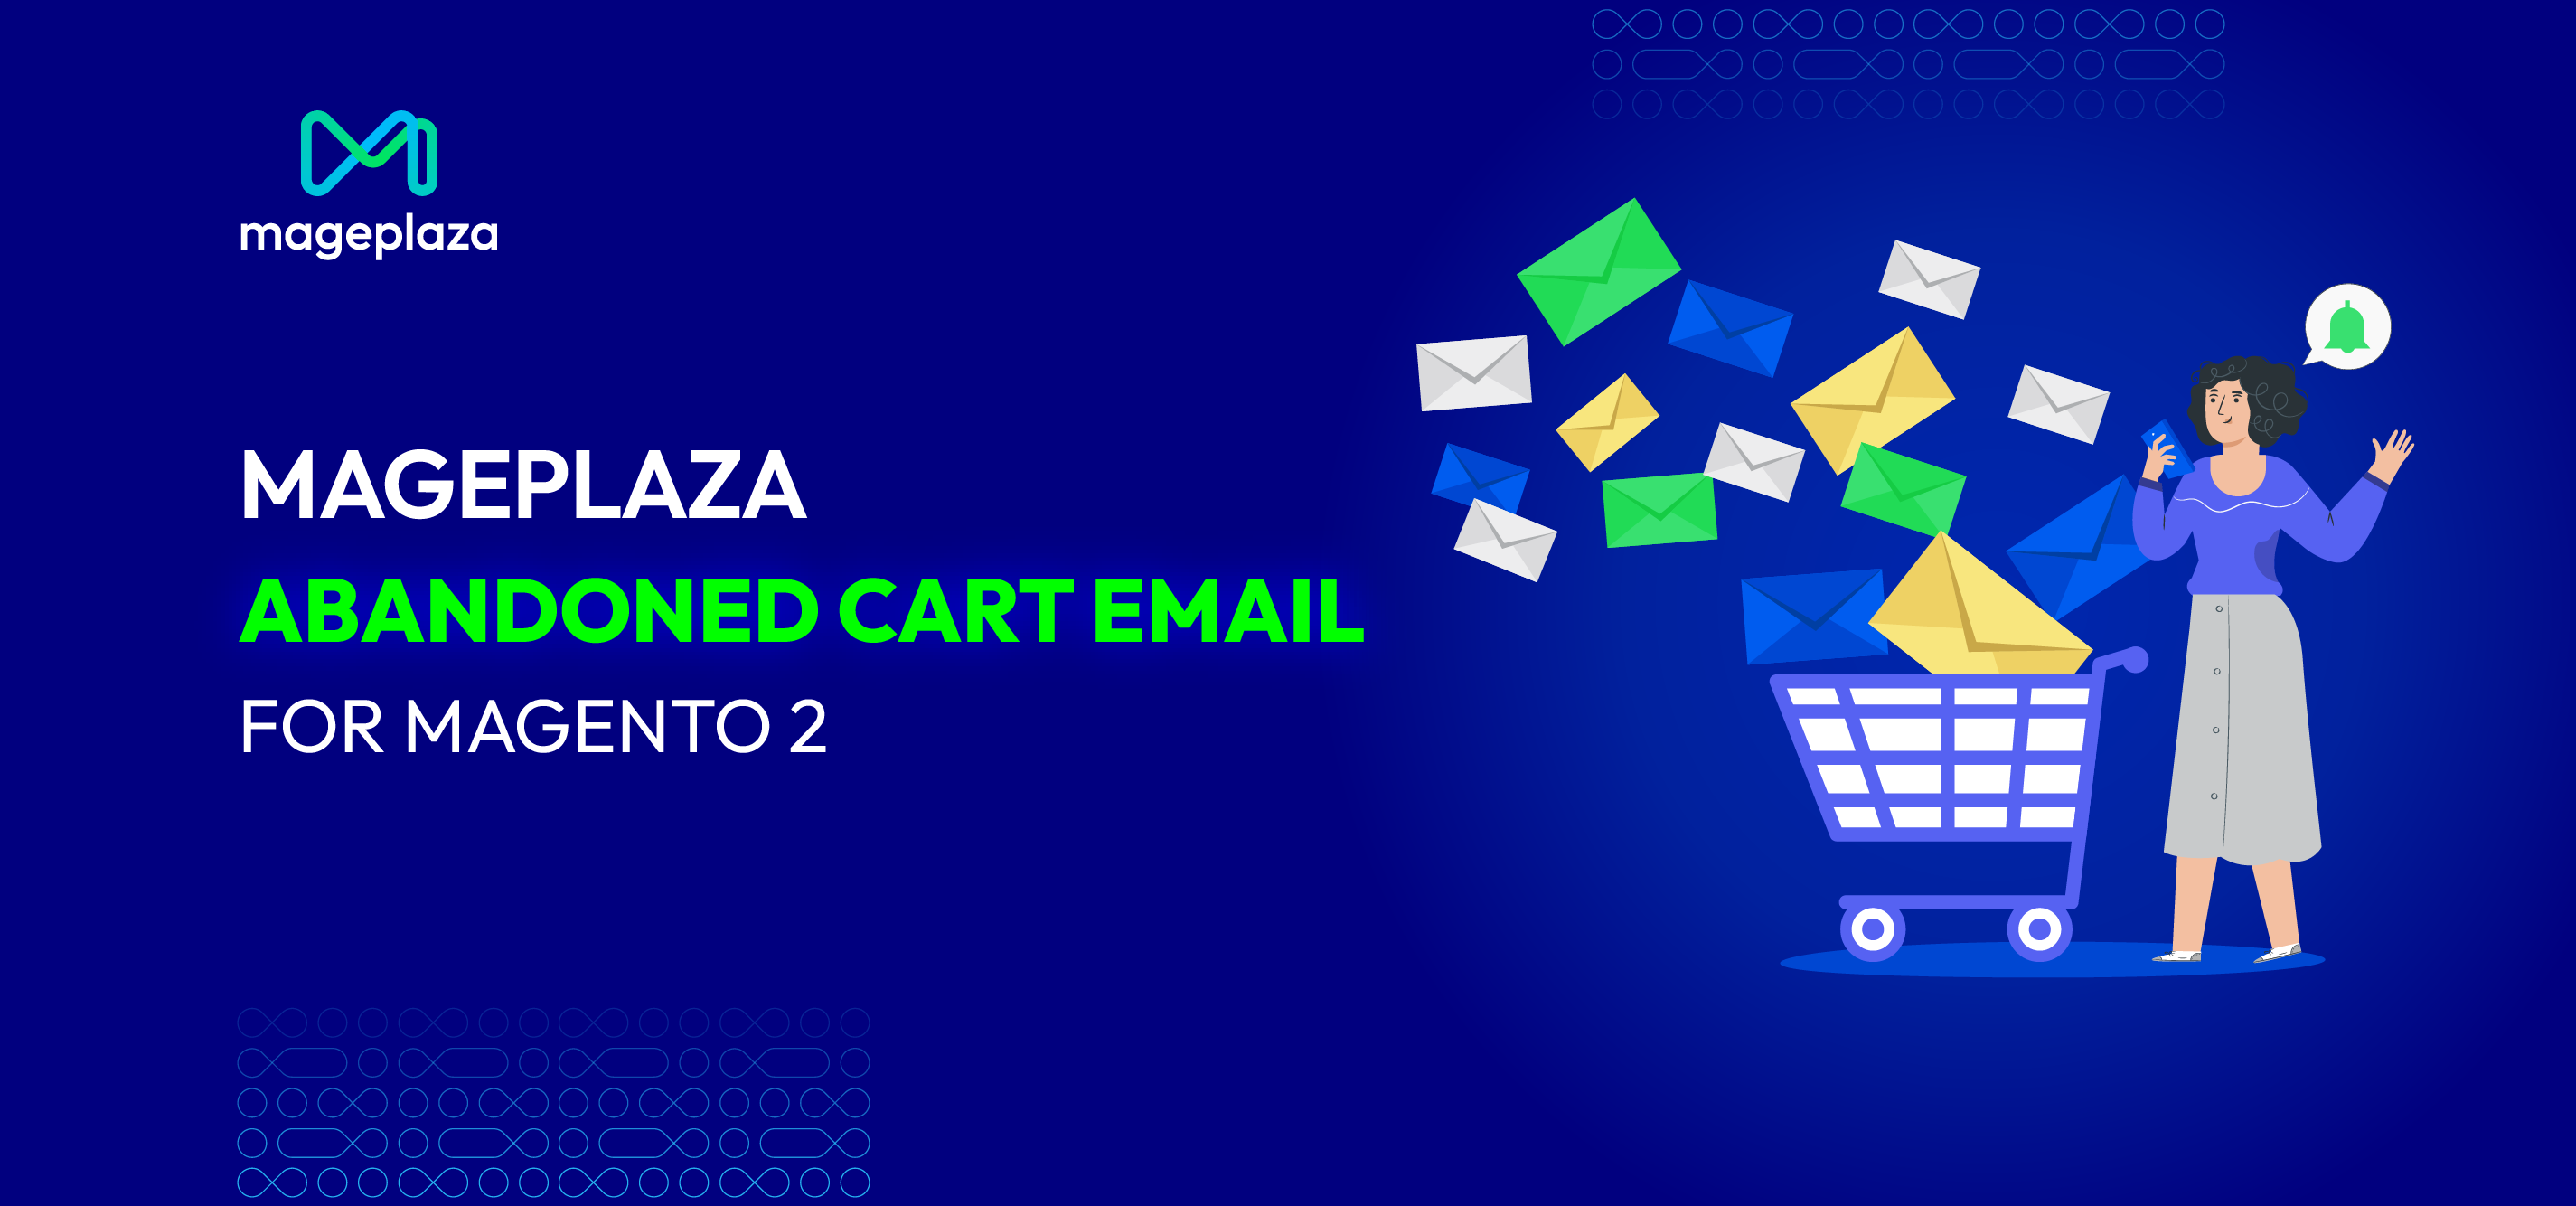 mageplaza cart abandoned email